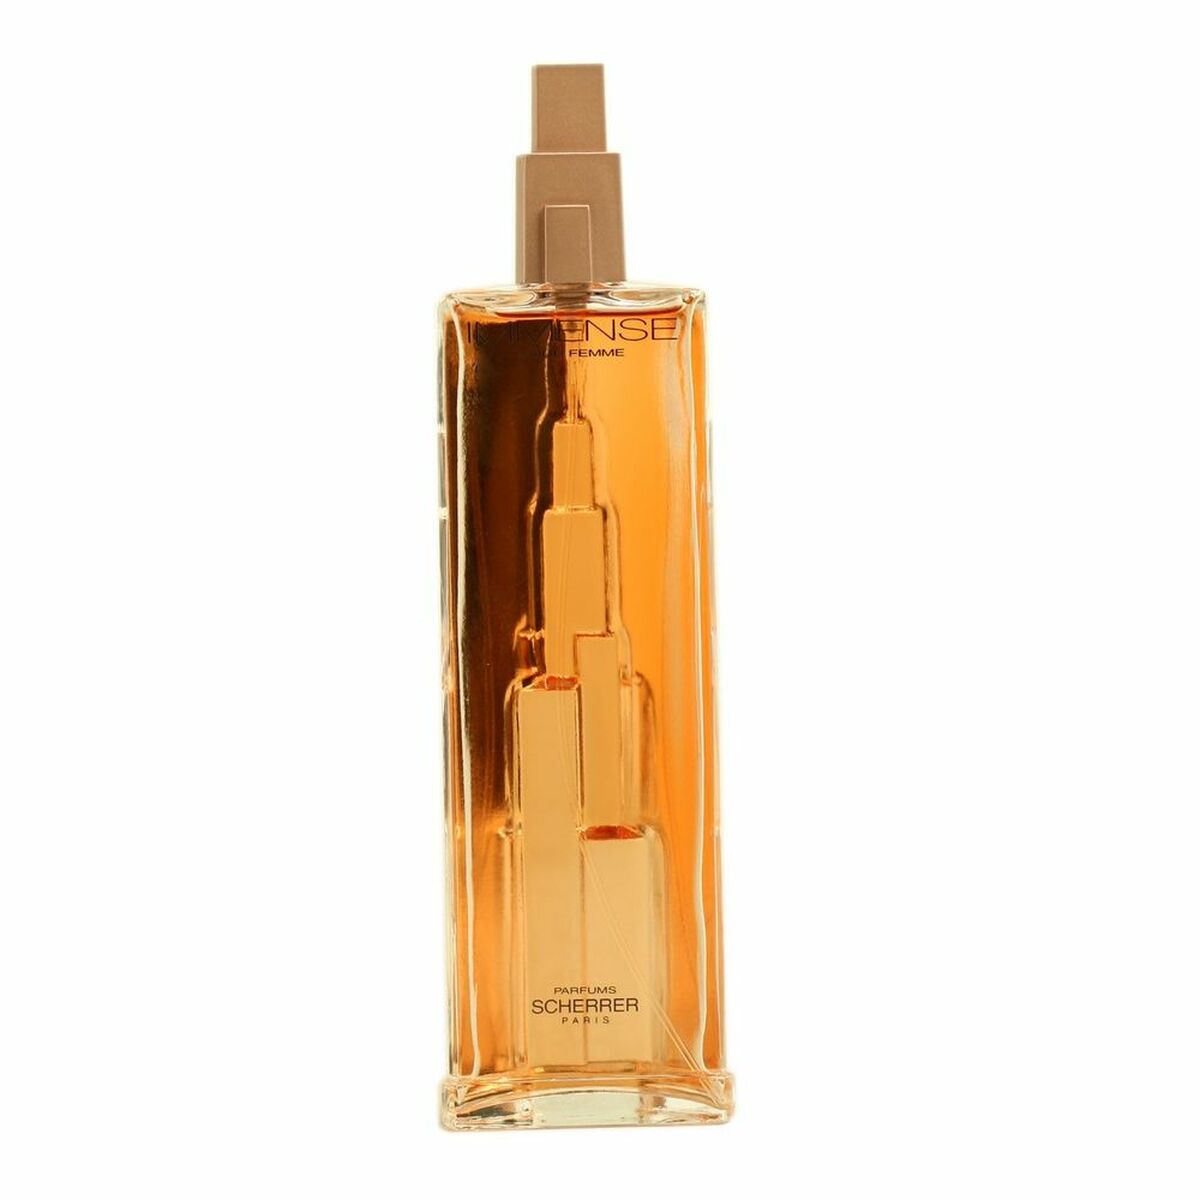 Perfume kobiet Jean Louis Scherrer ogromny (50 ml)